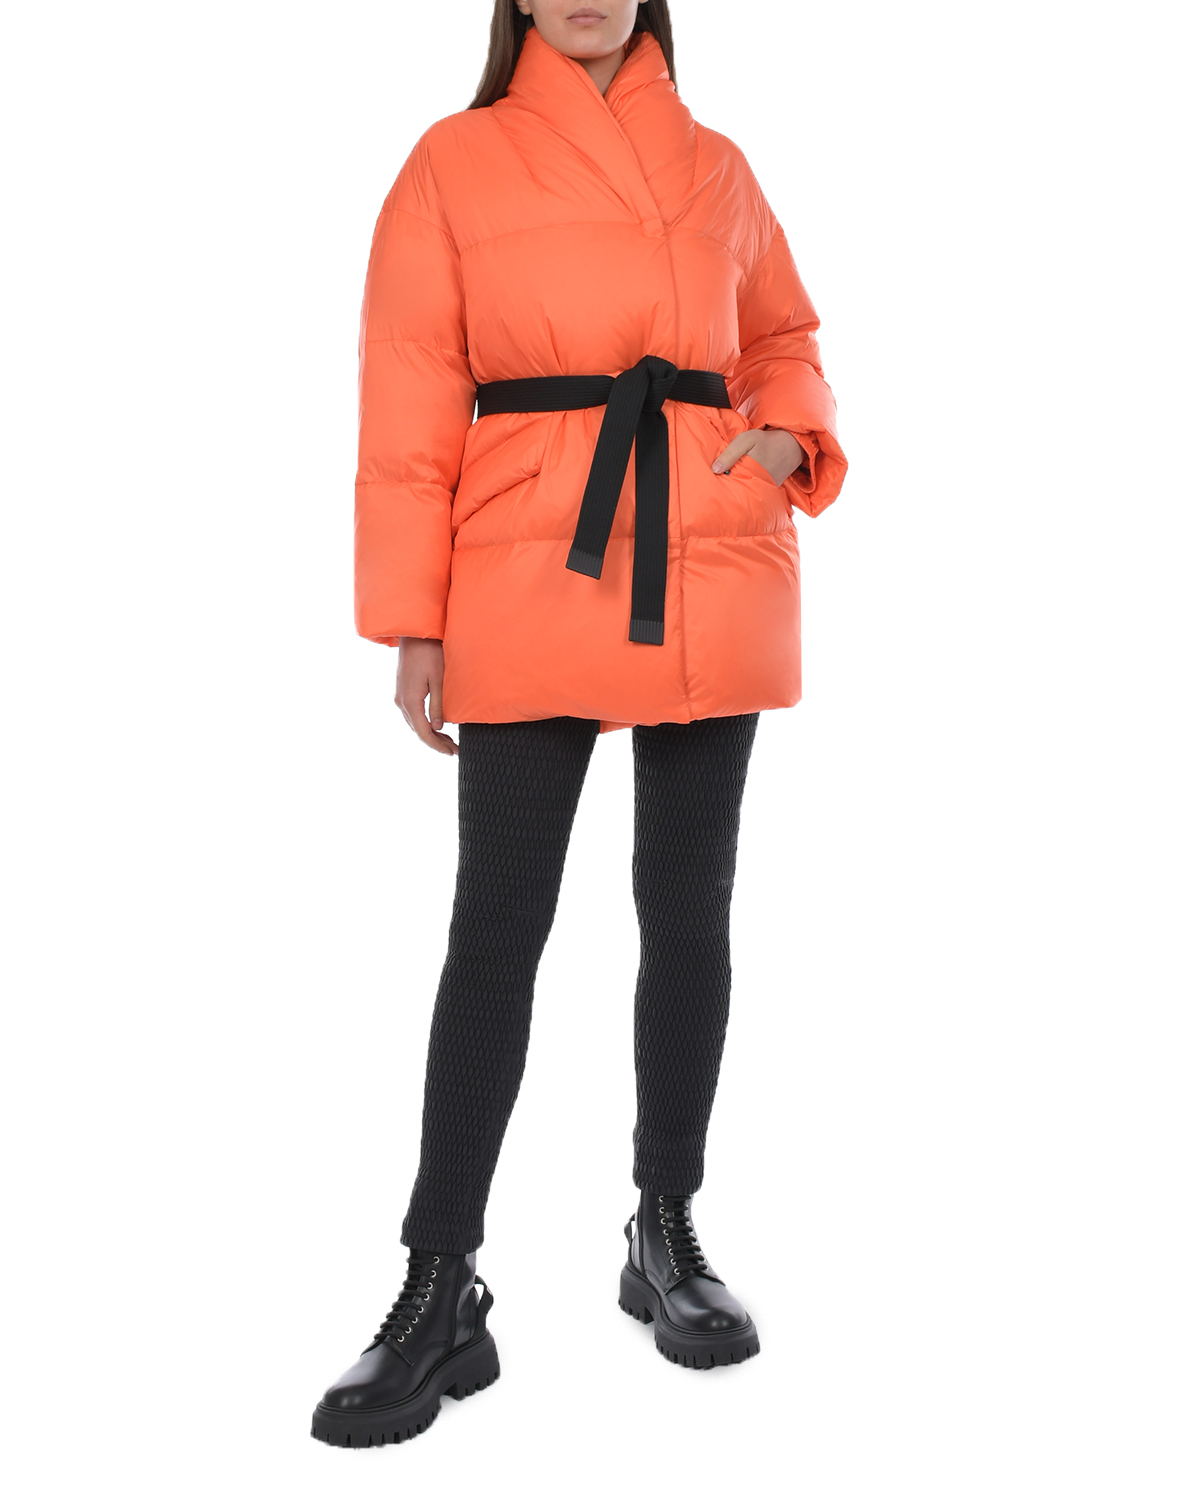 Оранжевая куртка с черным поясом Naumi, размер 36, цвет оранжевый - фото 5